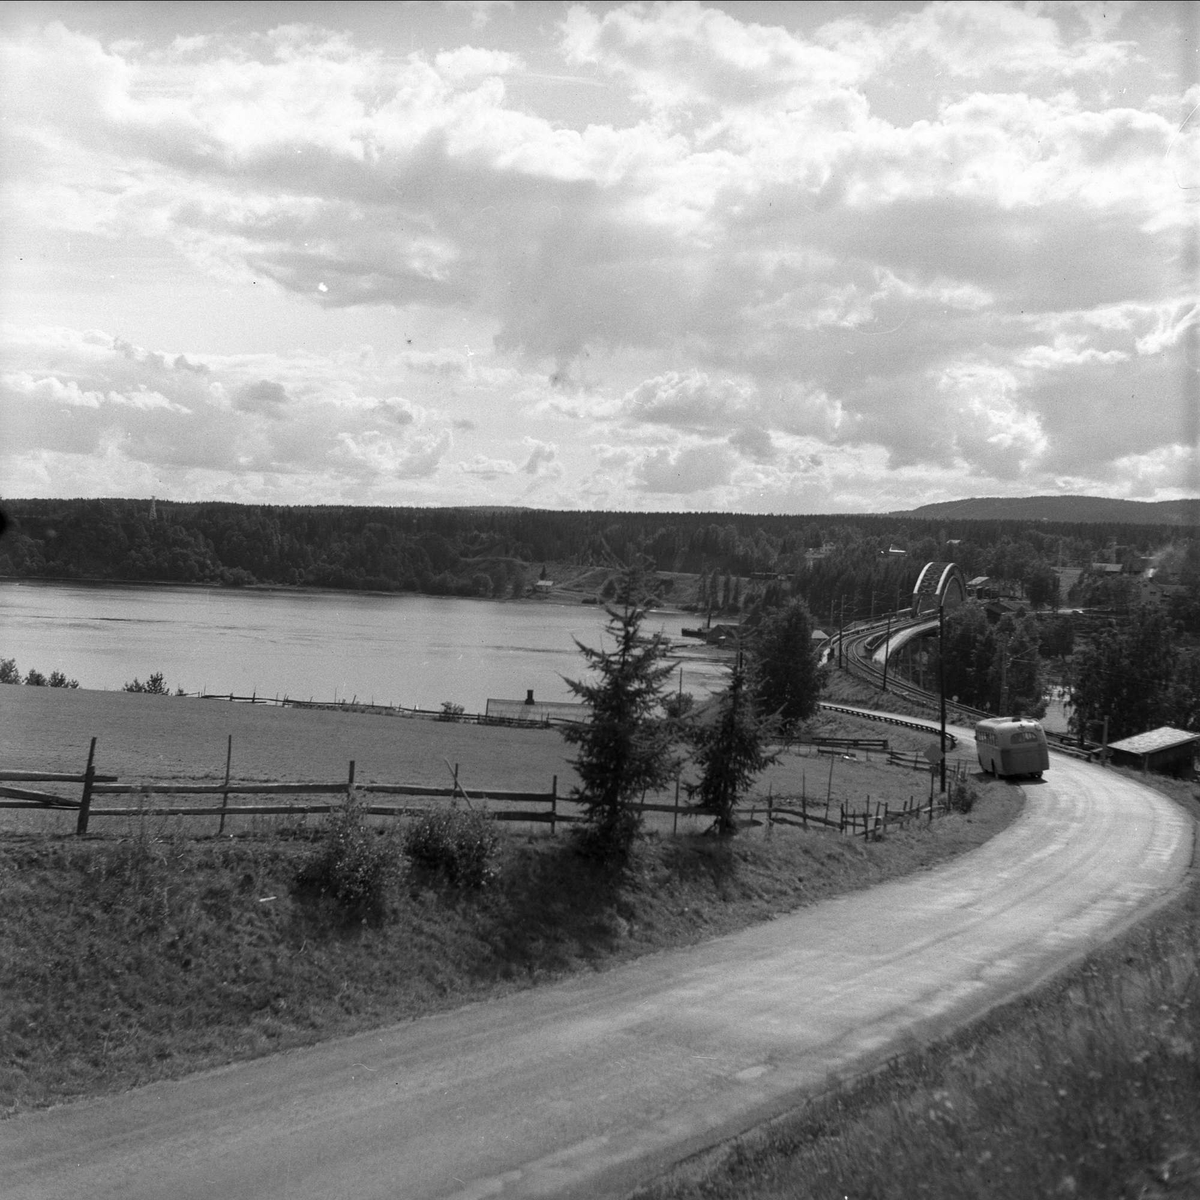 Minnesund, Akershus, 10.08.1956. Landskap med vei og den gamle jernbanebrua med påhengte kjørebaner for bil.